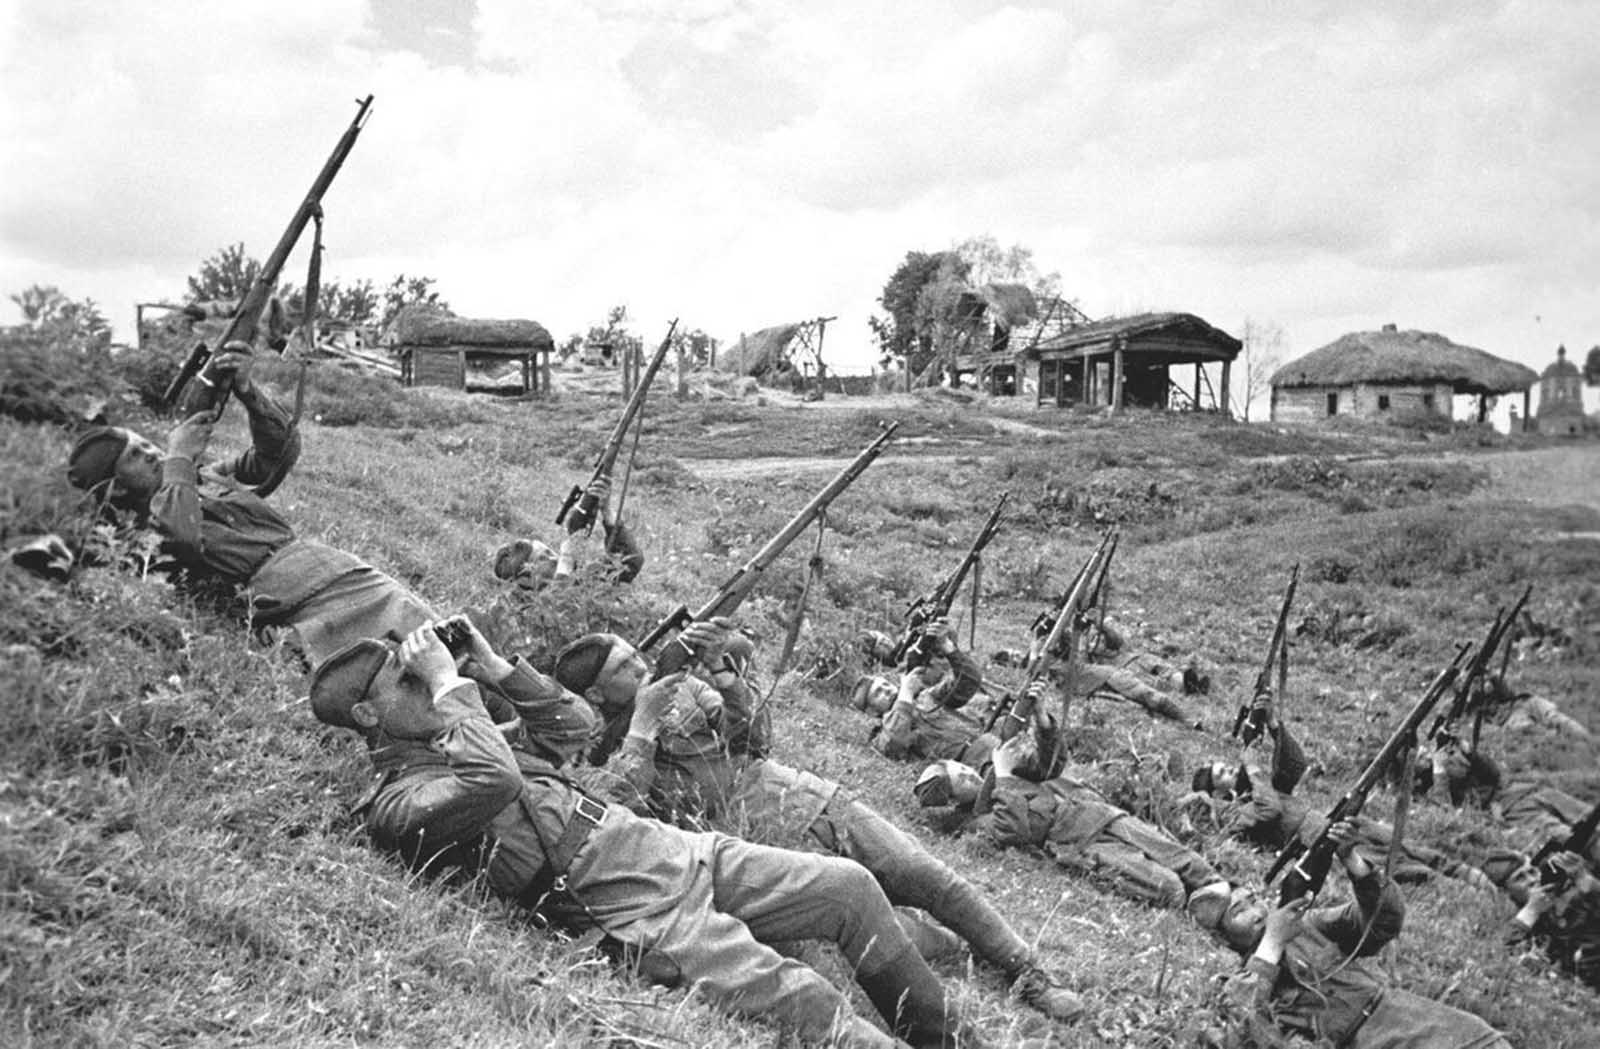 Les batailles sanglantes du front de l'Est, 1942-1943